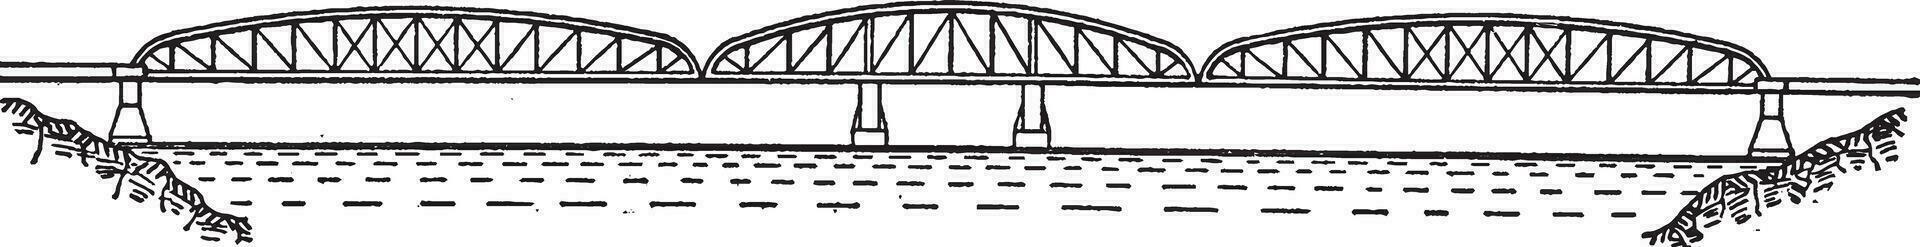 Jubilee Bridge, vintage illustration. vector